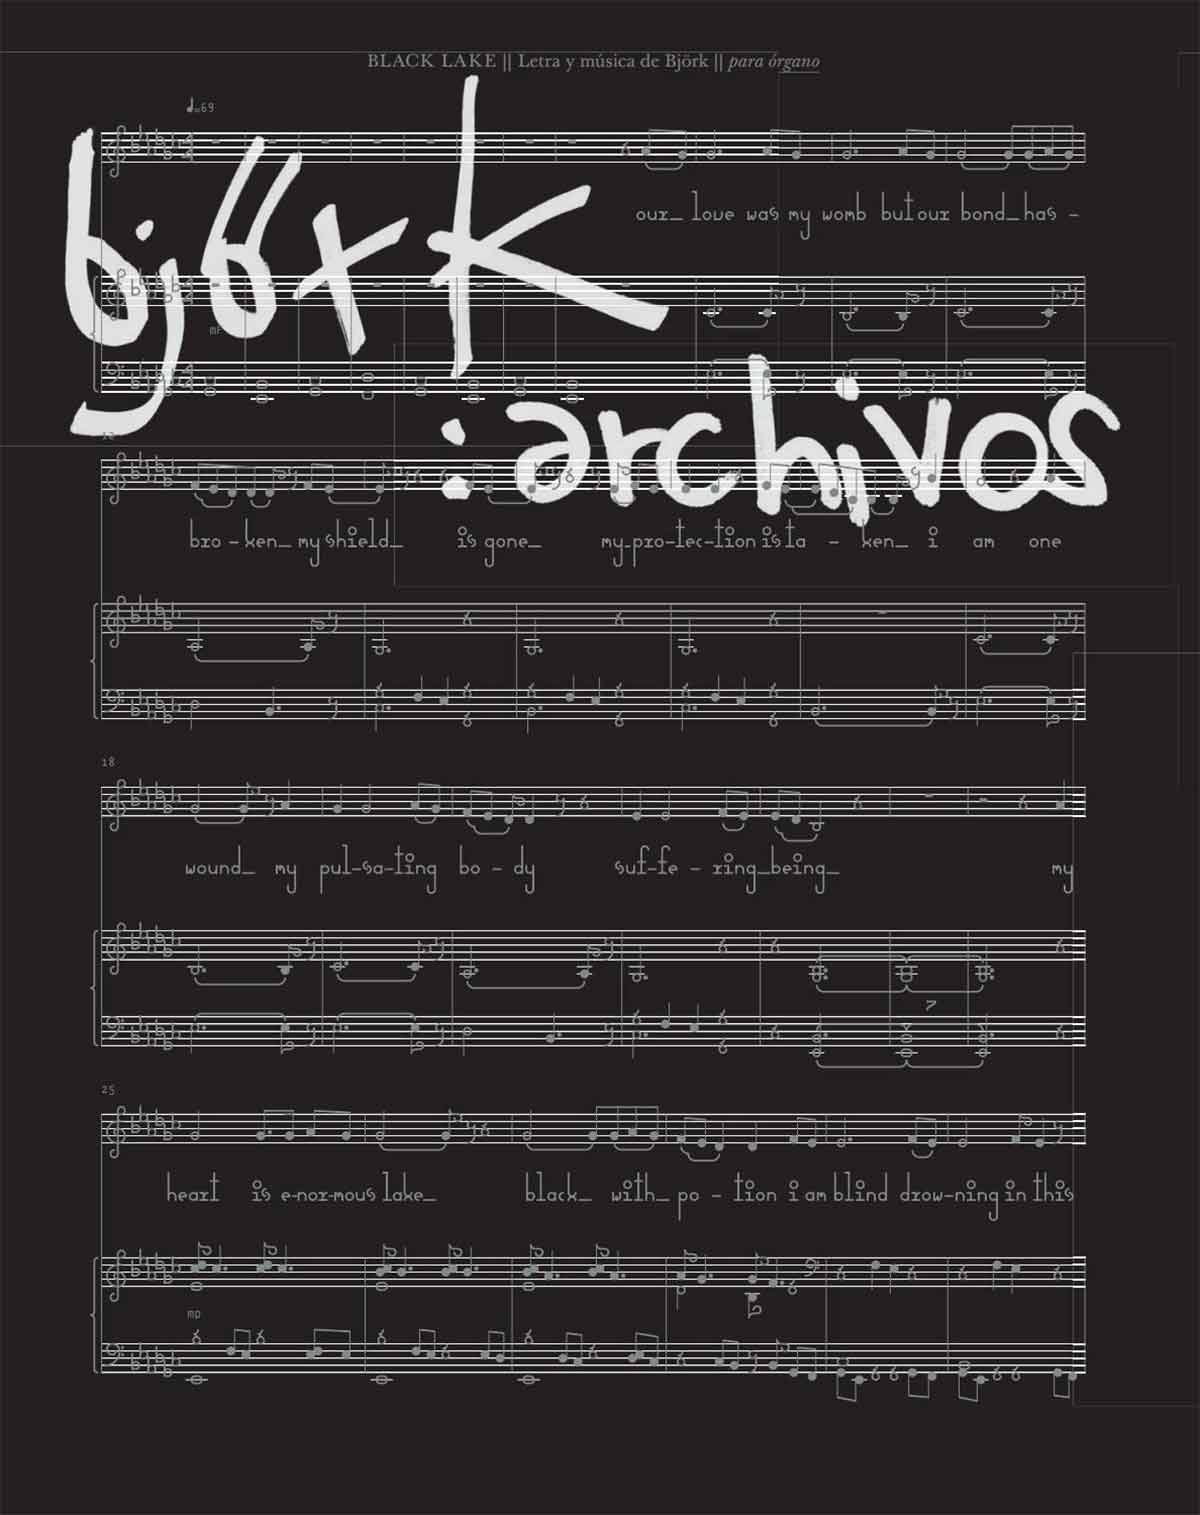 Björk: Archivos